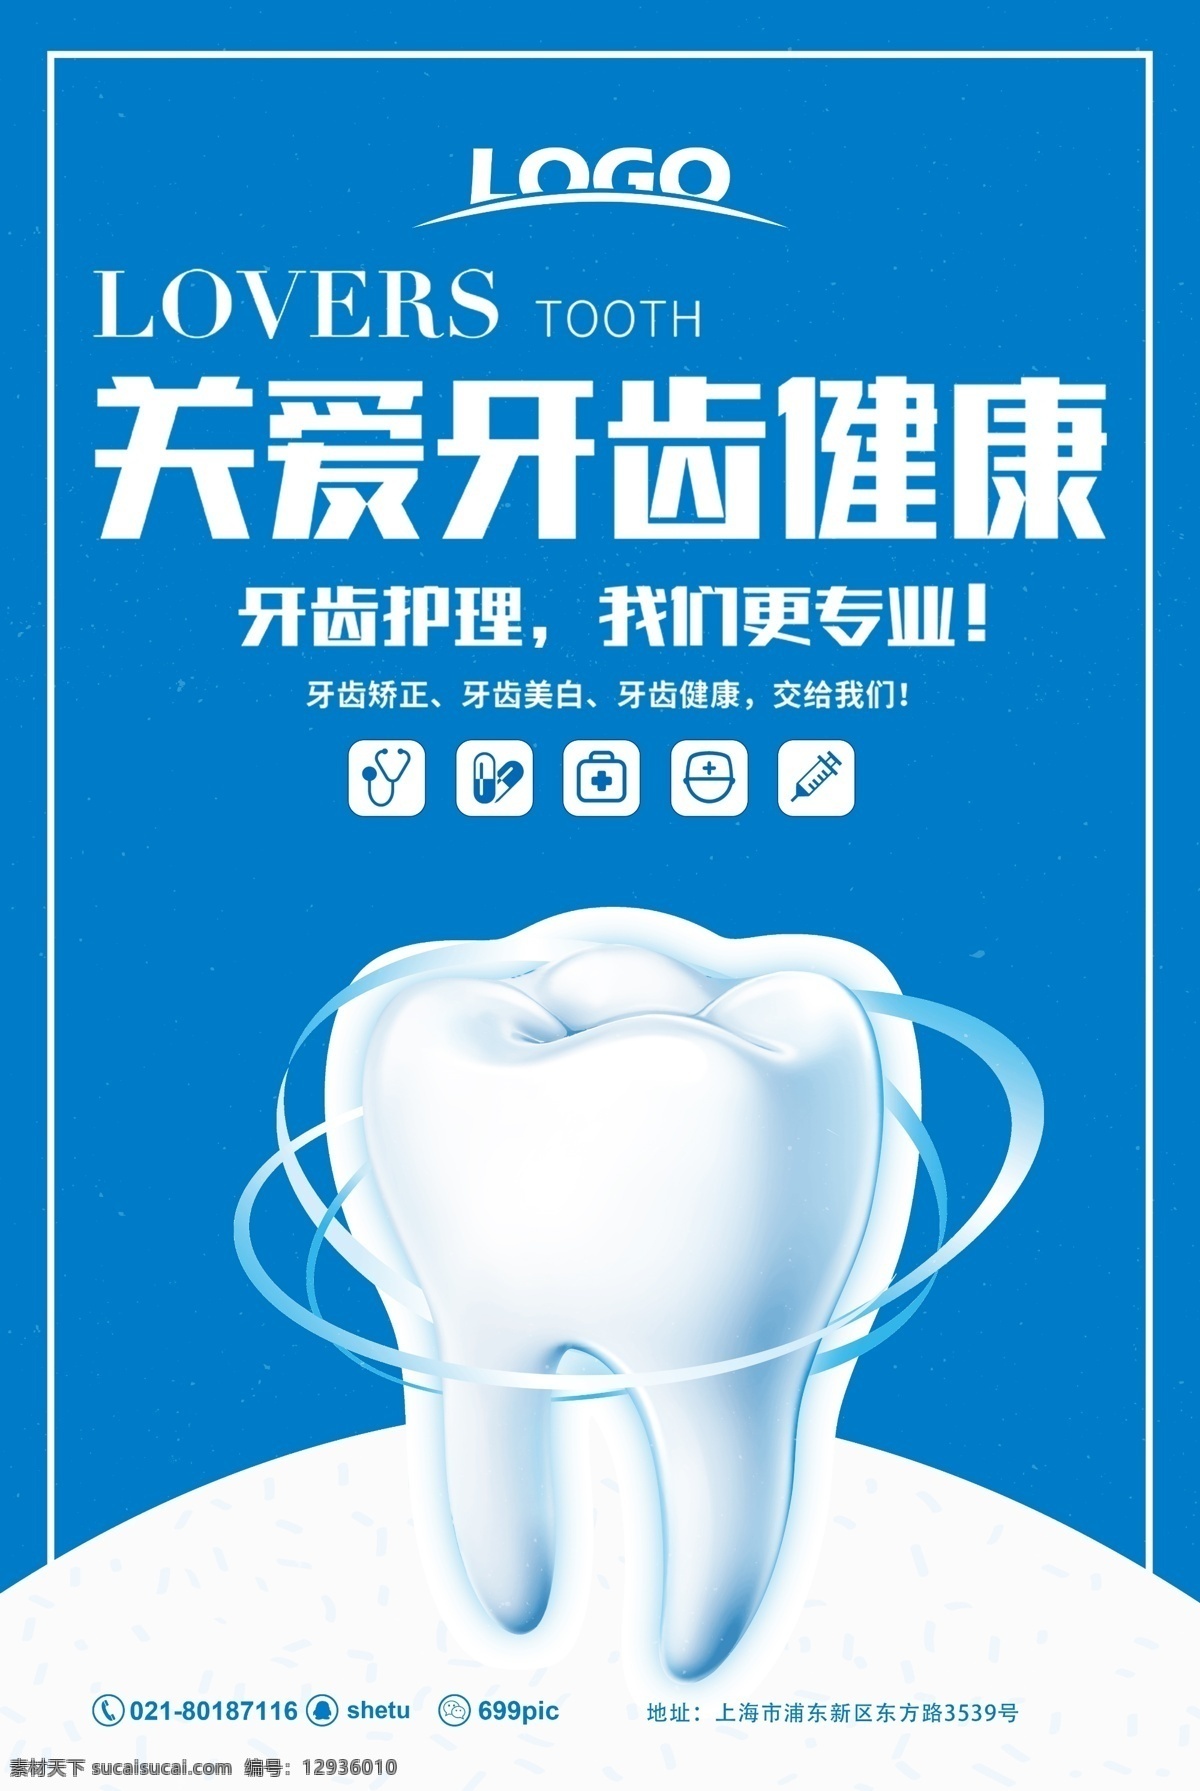 关爱 牙齿 健康 医疗 海报 关爱牙齿健康 护理 专业 美白 矫正 口腔 卫生 蓝色 医疗美容海报